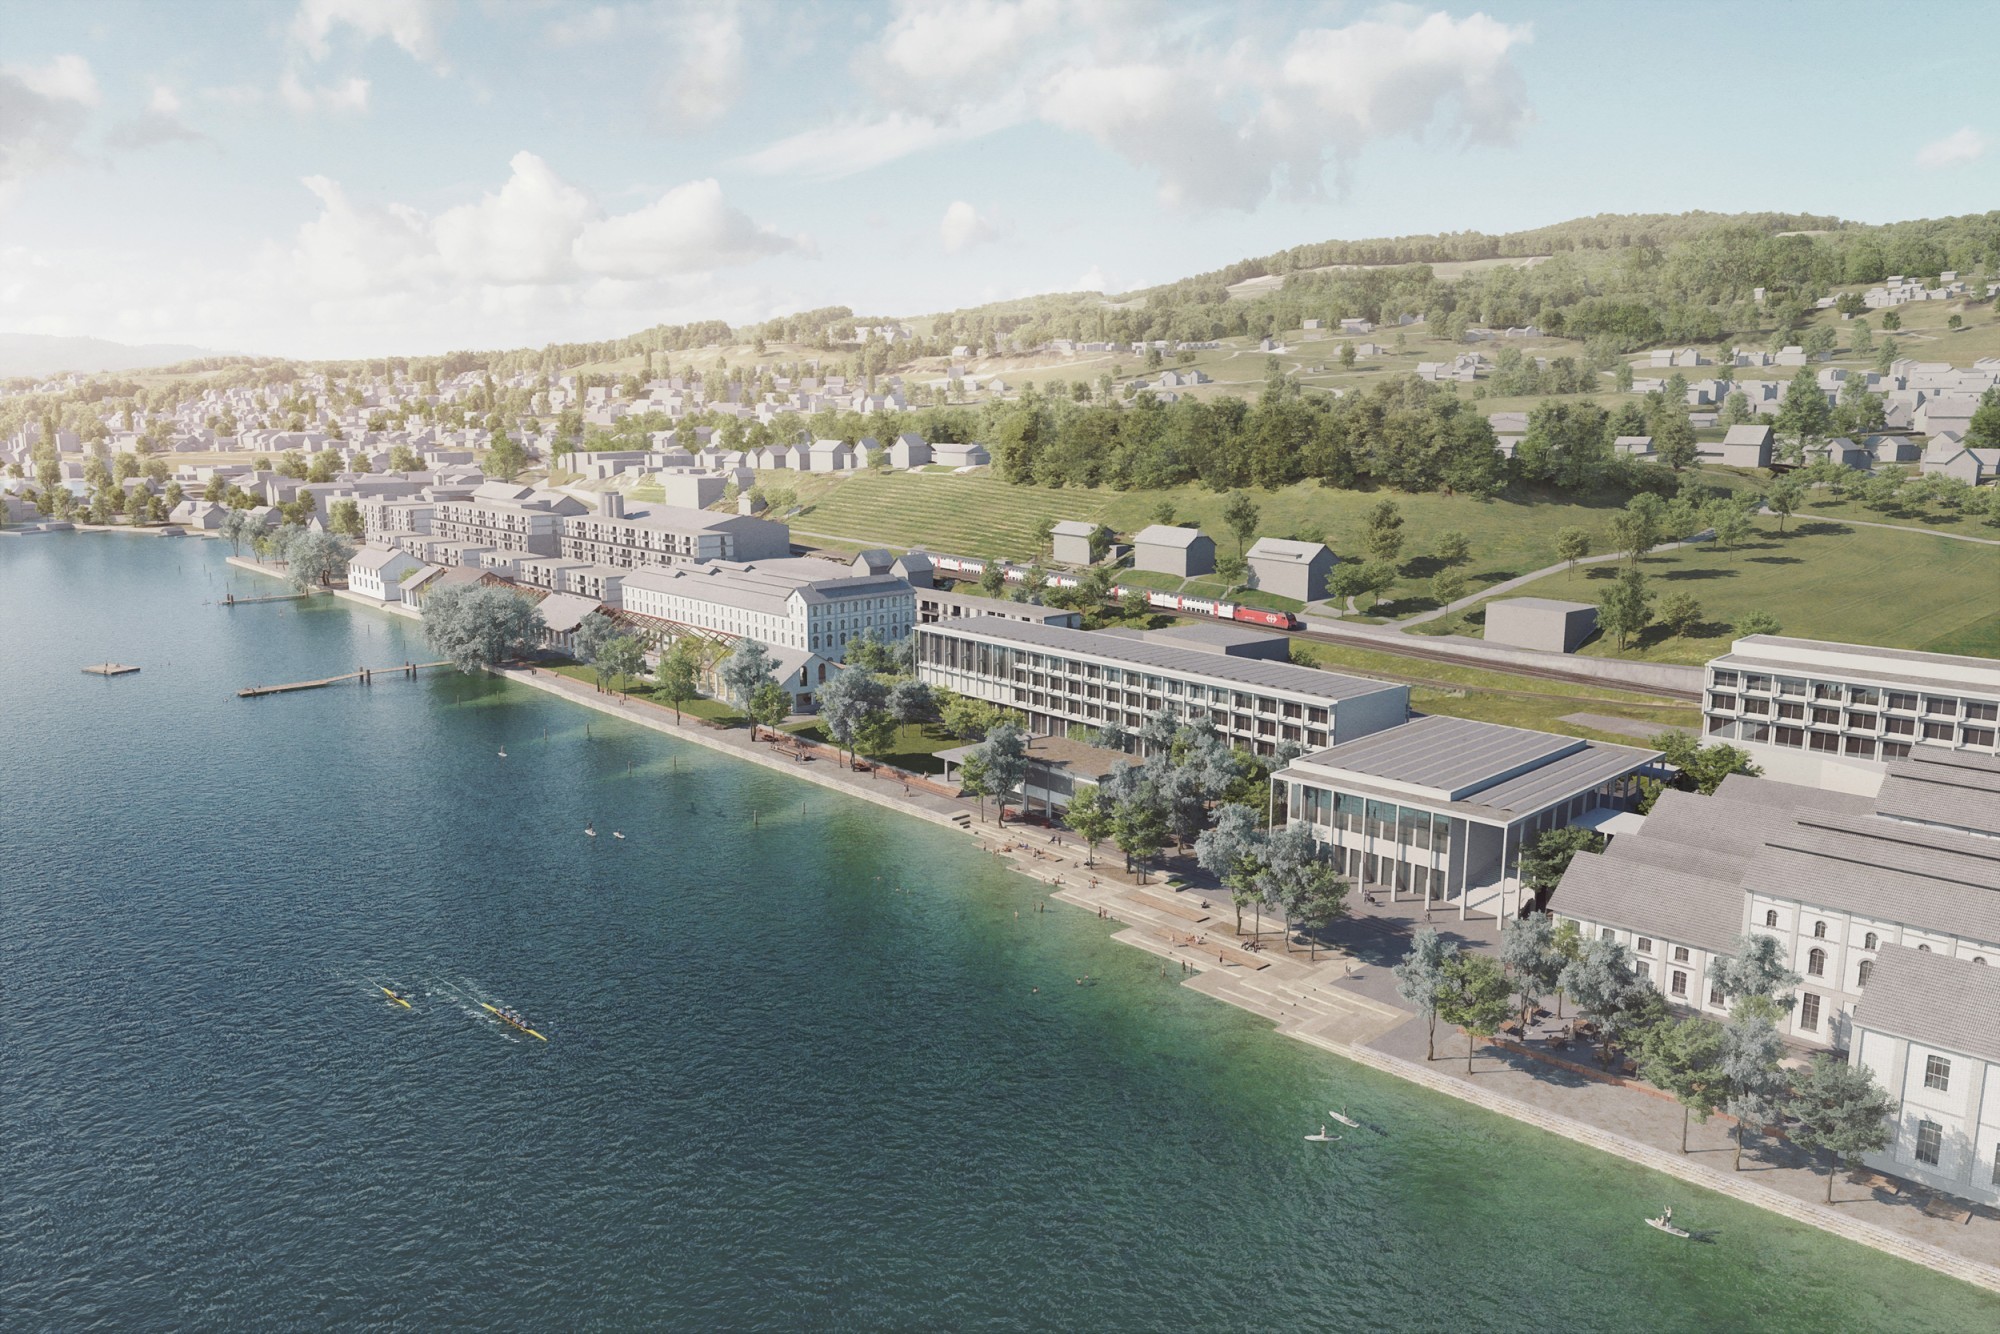 Visualisierung öffentlicher Seepark Uetikon am See Zürich